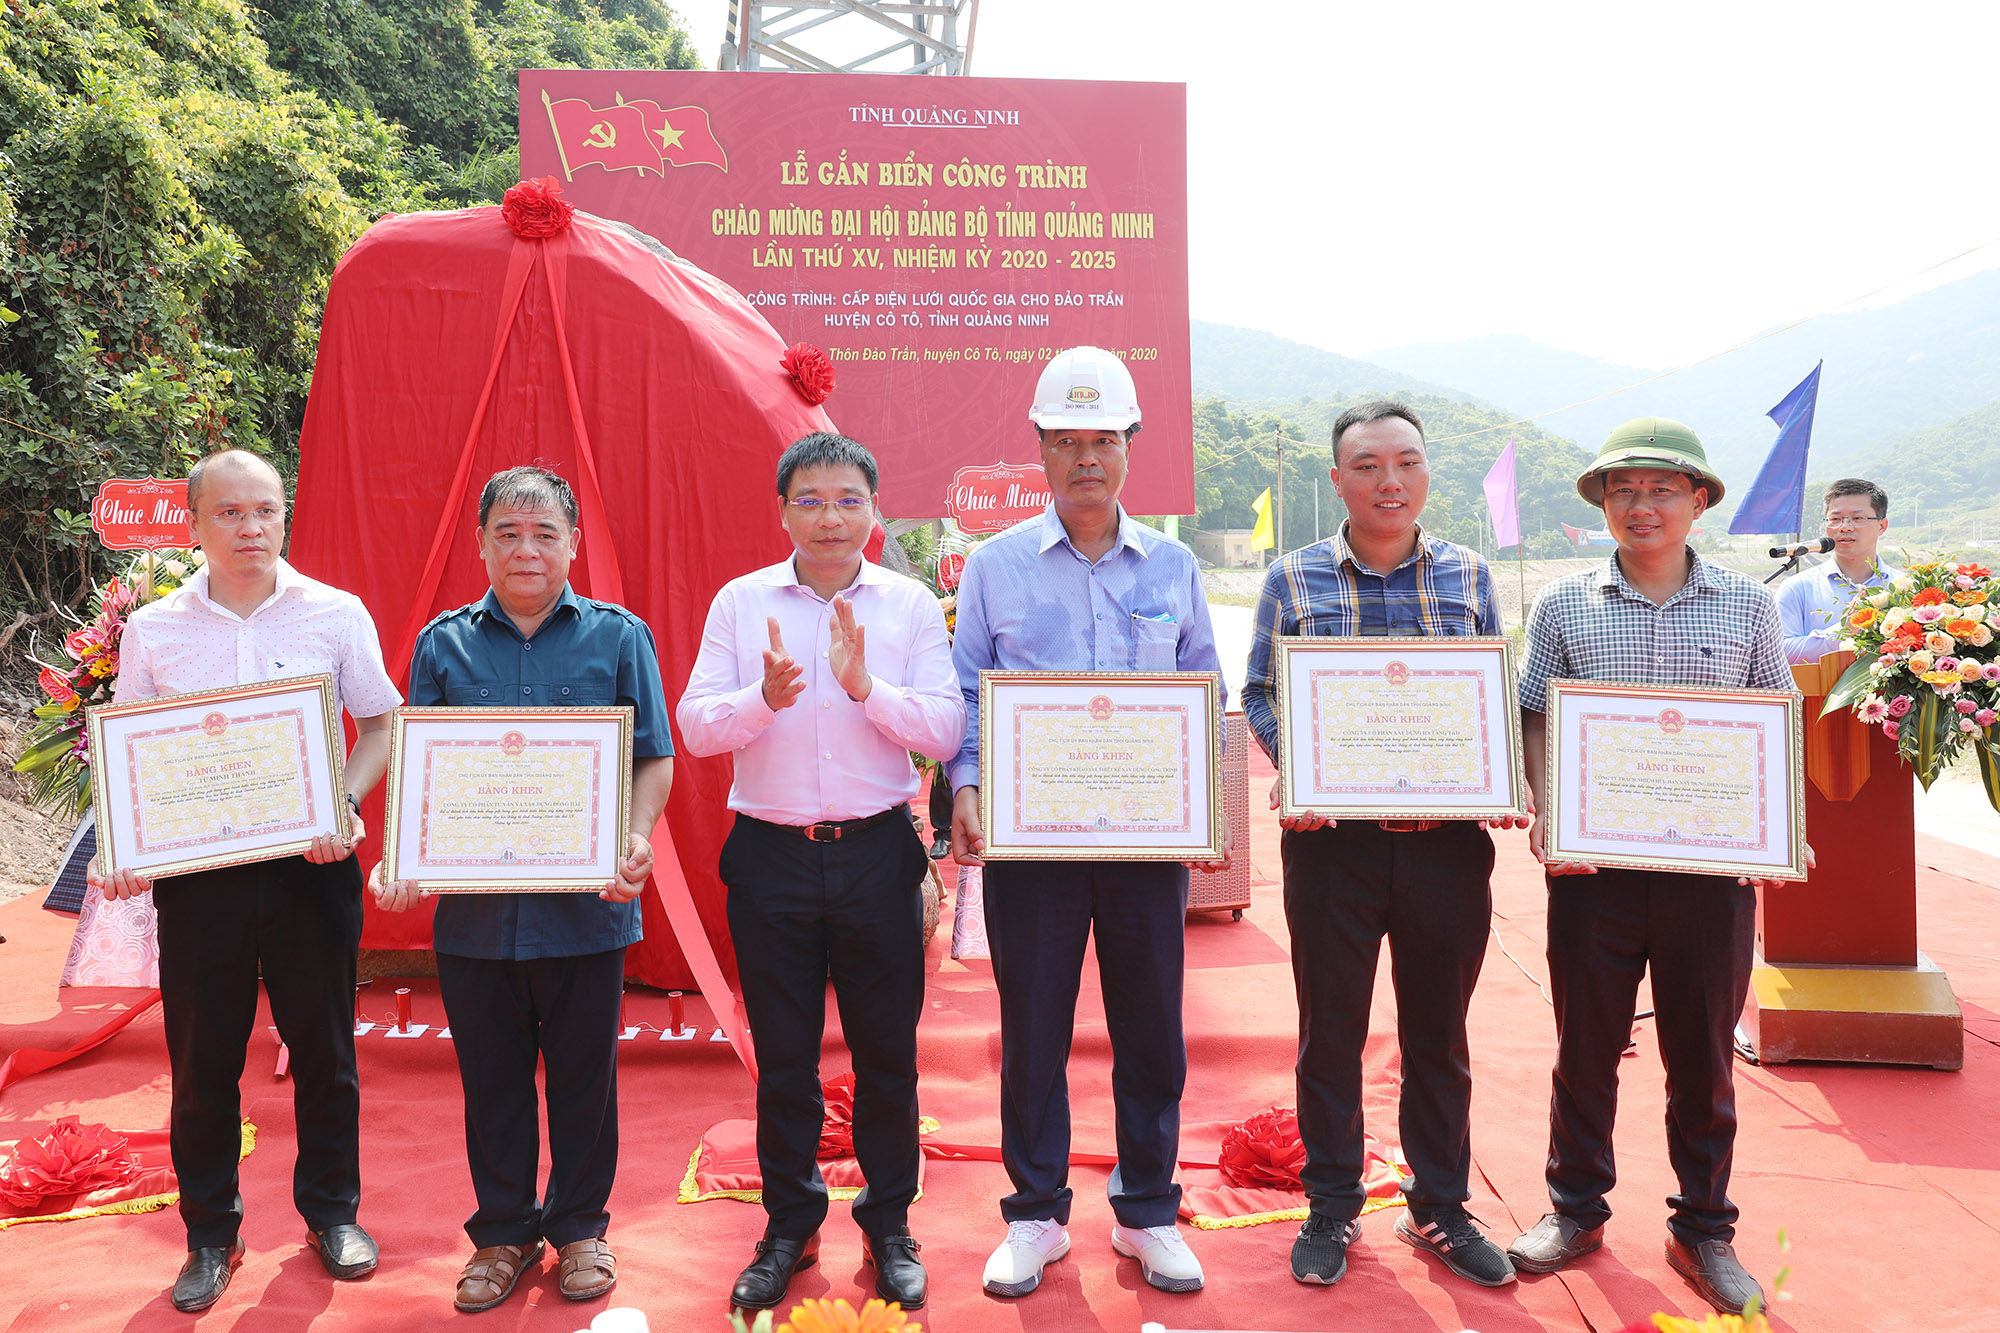 Đồng chí Nguyễn Văn Thắng, Phó Bí thư Tỉnh ủy, Chủ tịch UBND tỉnh tặng bằng khen cho các đơn vị, cá nhân